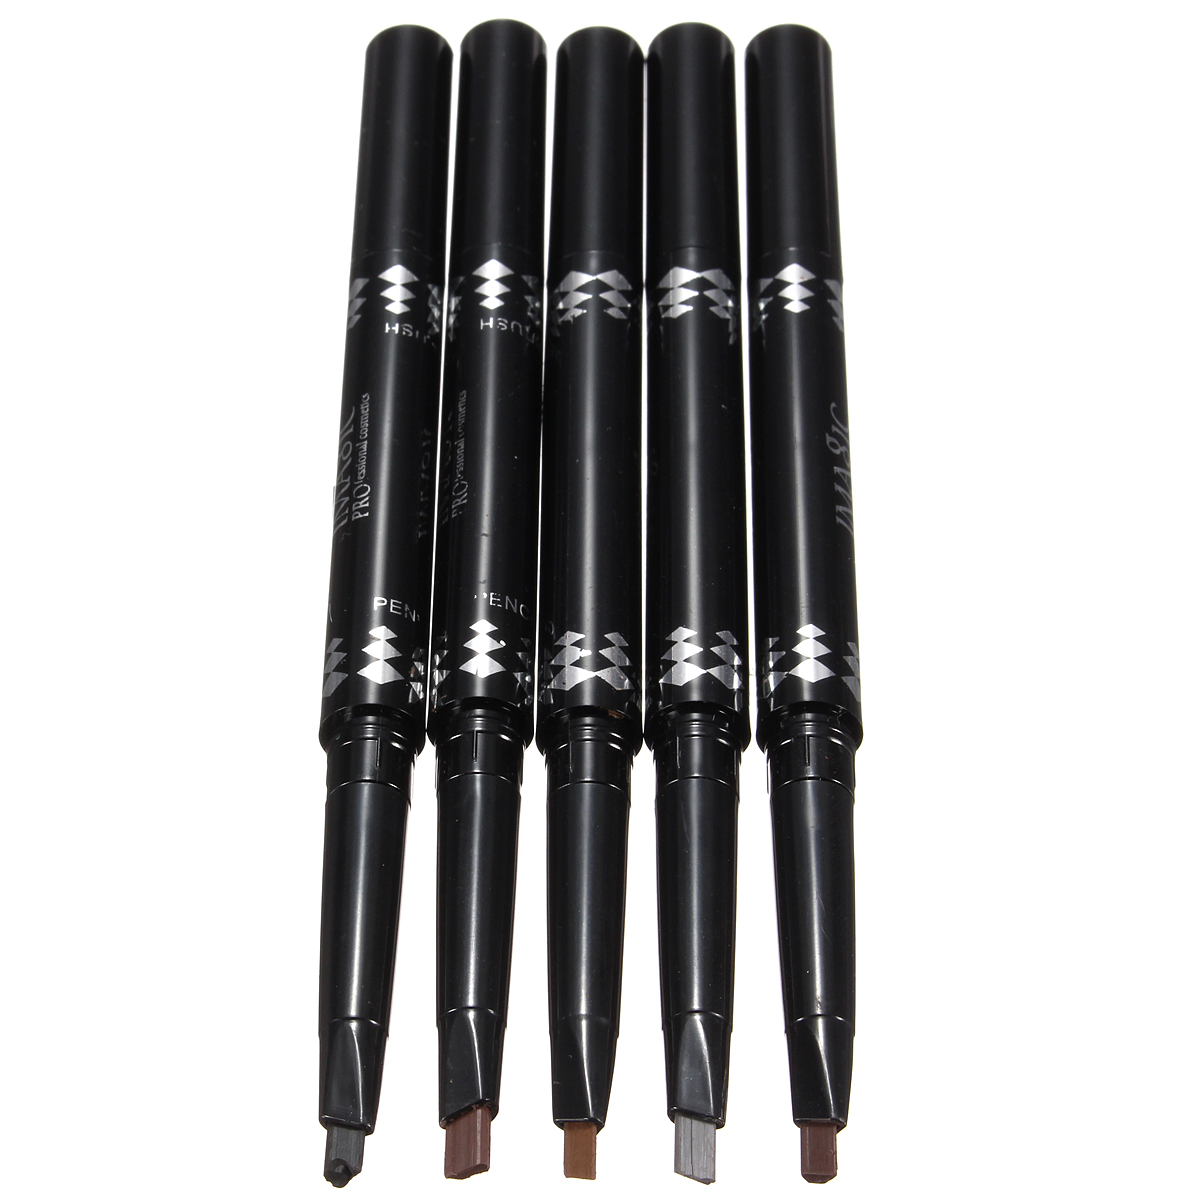 5 Colors 2 In 1 Waterproof Eyebrow Pencil Pen with Brush Eyeliner Makeup Tool